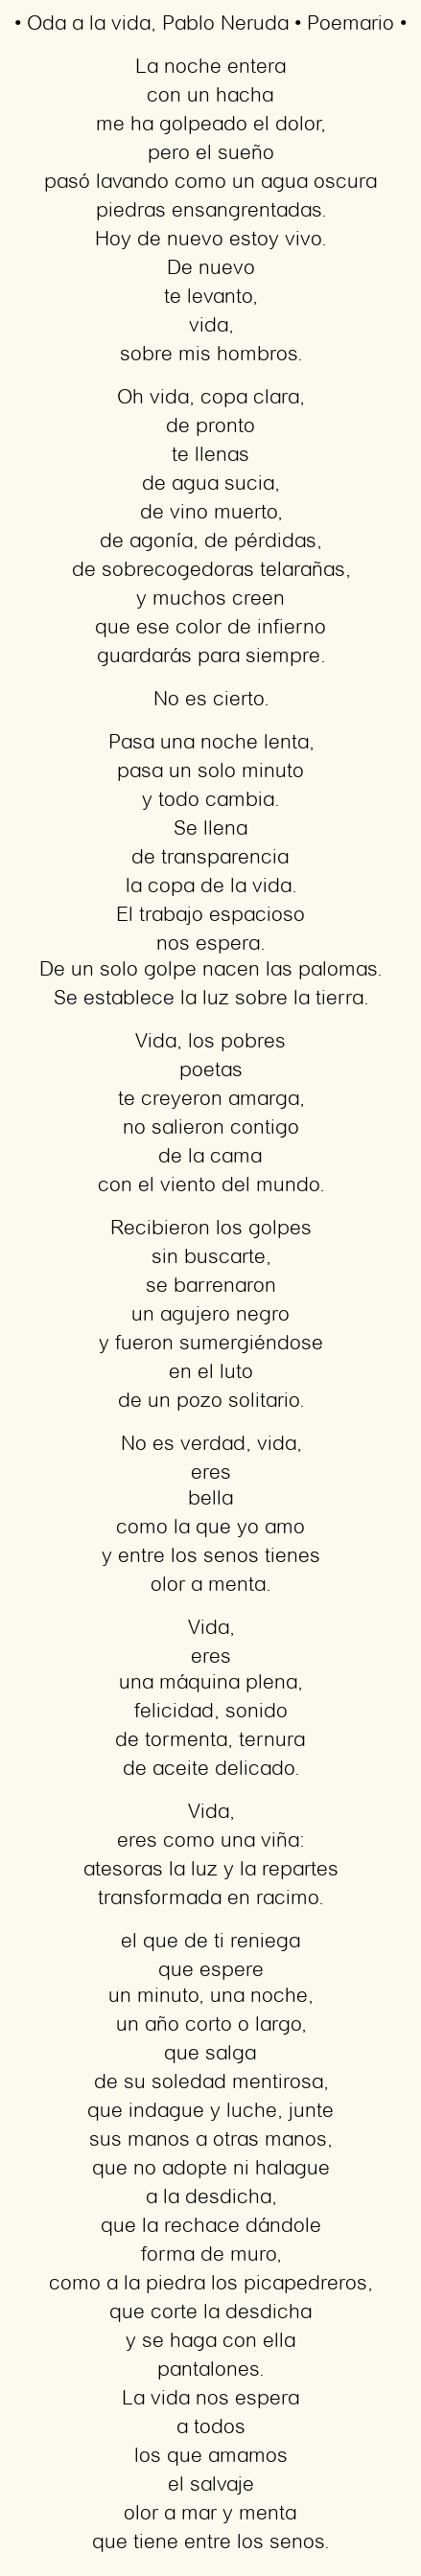 Imagen con el poema Oda a la vida, por Pablo Neruda